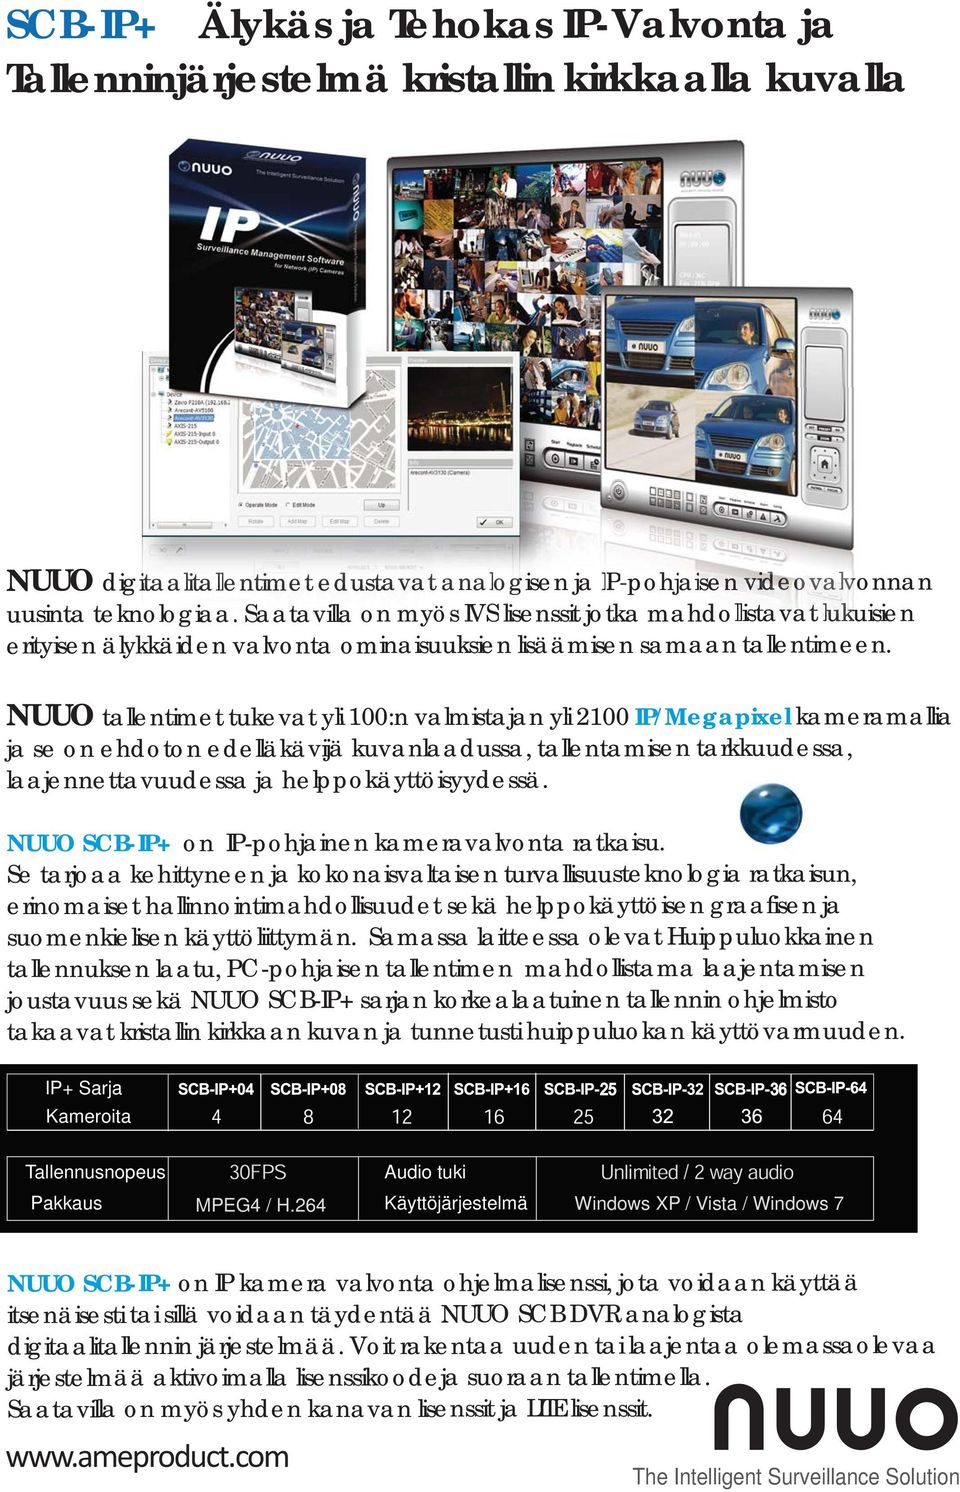 NUUO tallentimet tukevat yli 100:n valmistajan yli 2100 IP/Megapixel kameramallia entimet tukevat yli 100:n valmistaja ja se on ehdoton edelläkävijä kuvanlaadussa, tallentamisen tarkkuudessa,